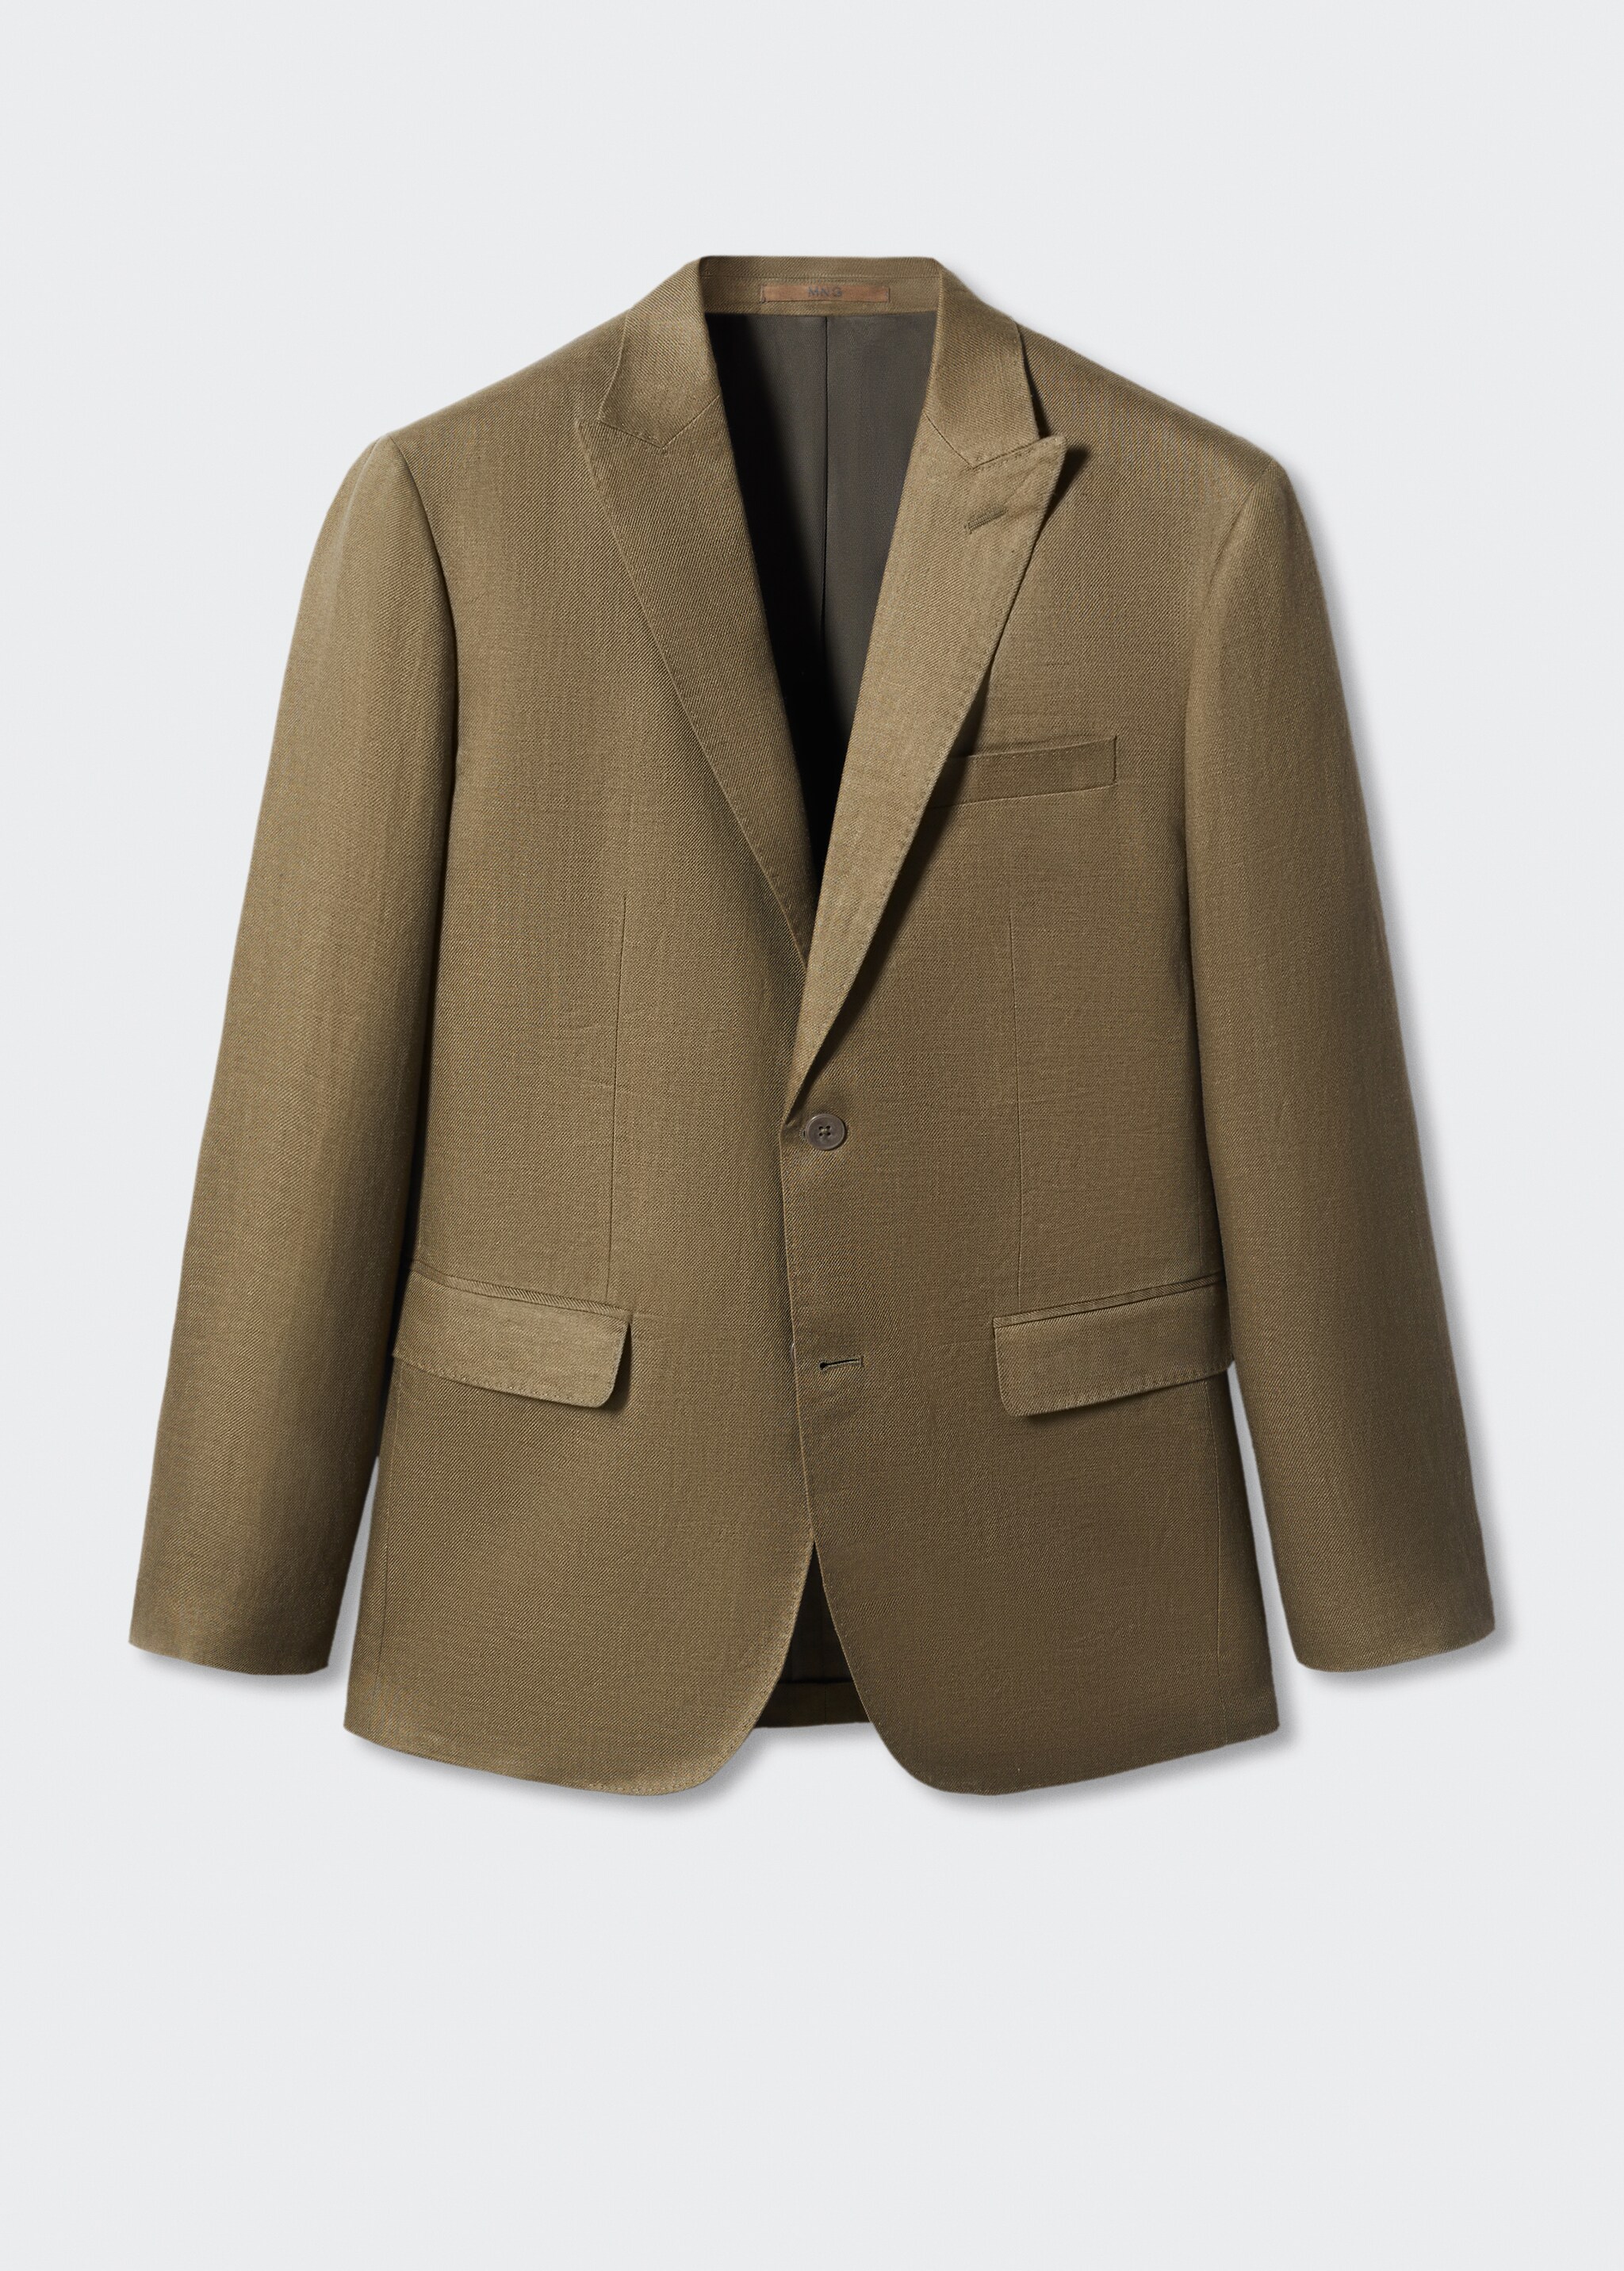 Blazer suit 100% linen - Article without model